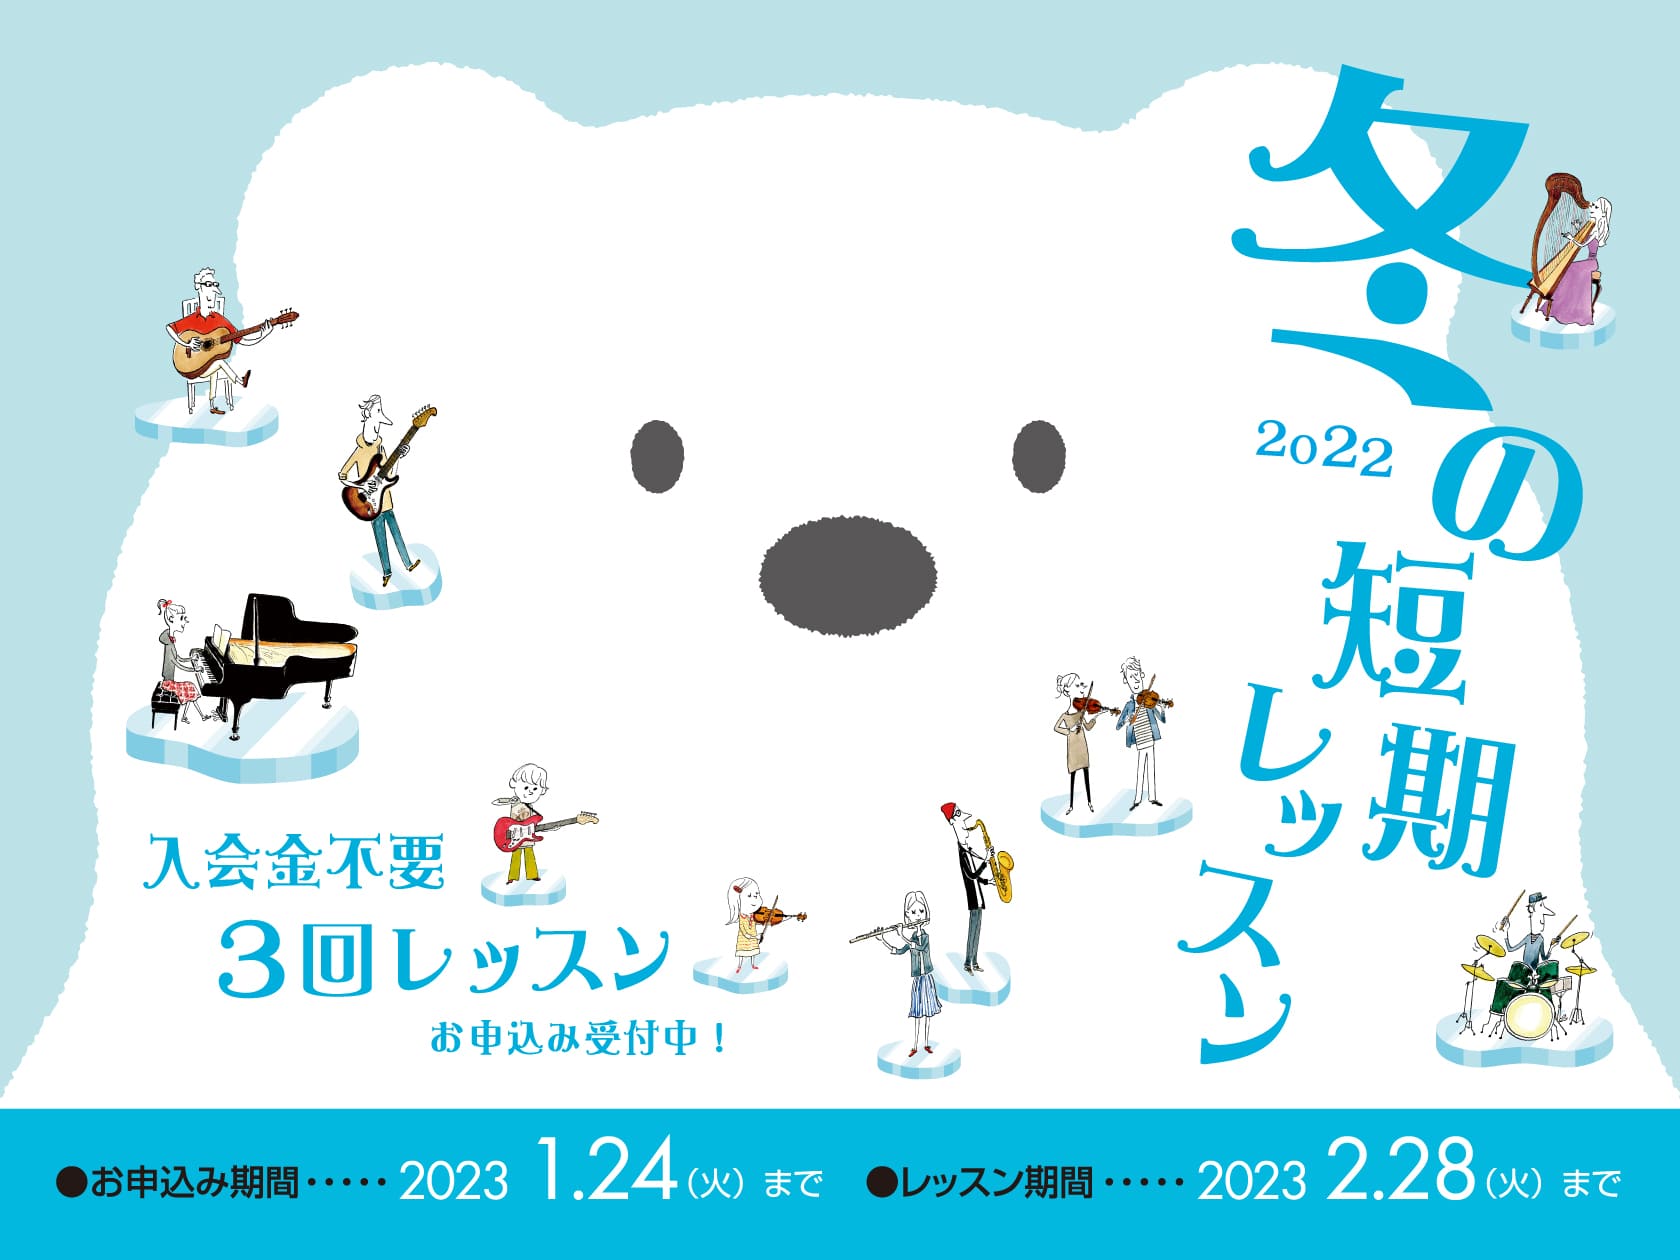 *入会金不要で、1コース3回のレッスンが受けられる！ 現在島村楽器の音楽教室では、冬の短期レッスンを受付中です。 2020年9月にオープン！お部屋も綺麗な空間でレッスンを受けて頂けます♪ [https://www.shimamura.co.jp/p/lesson/campaign/short_ter […]